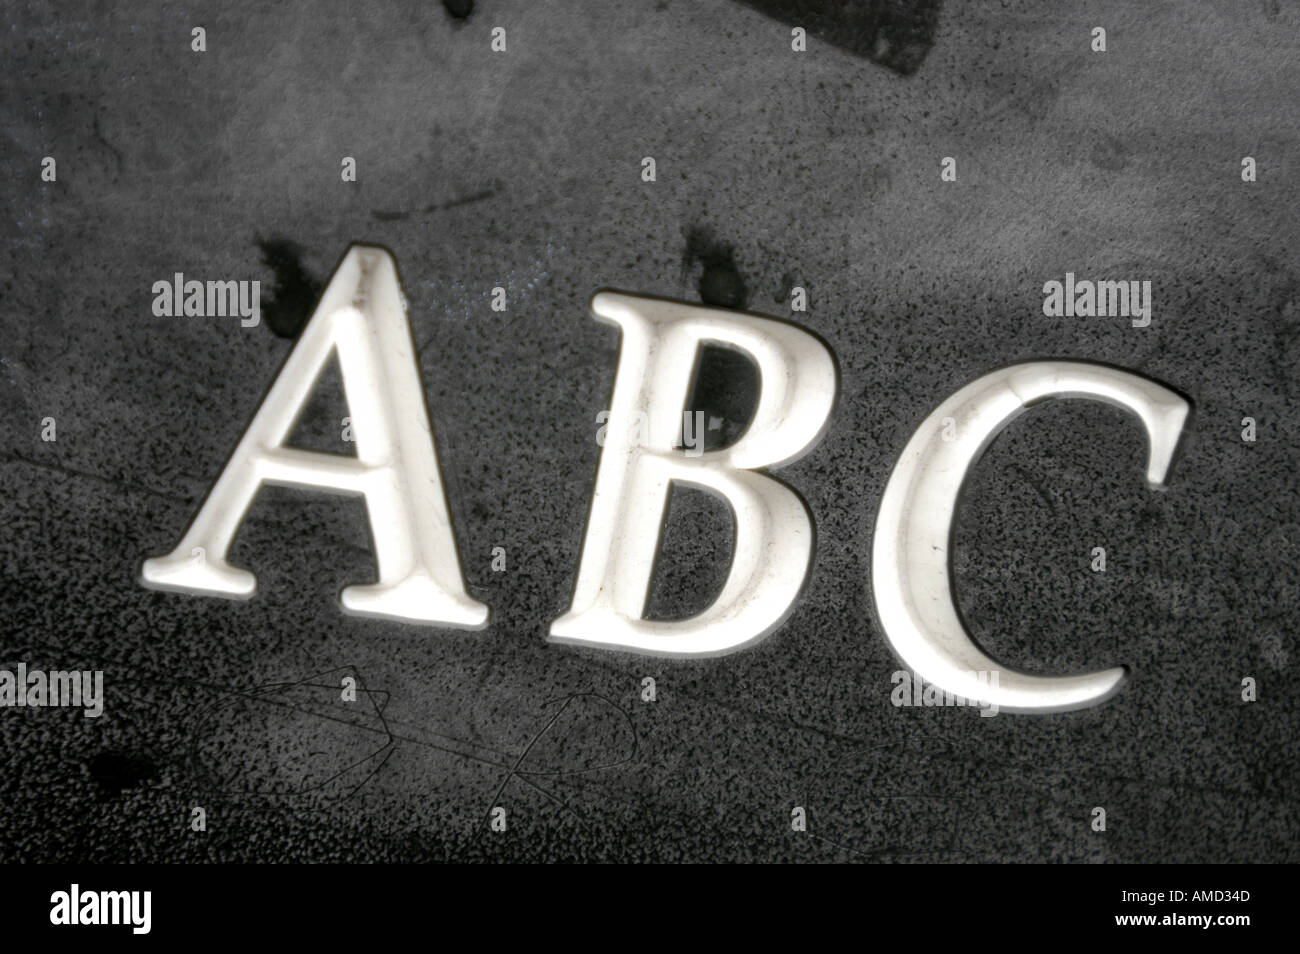 'Abc' incisa in una superficie scura. Foto Stock